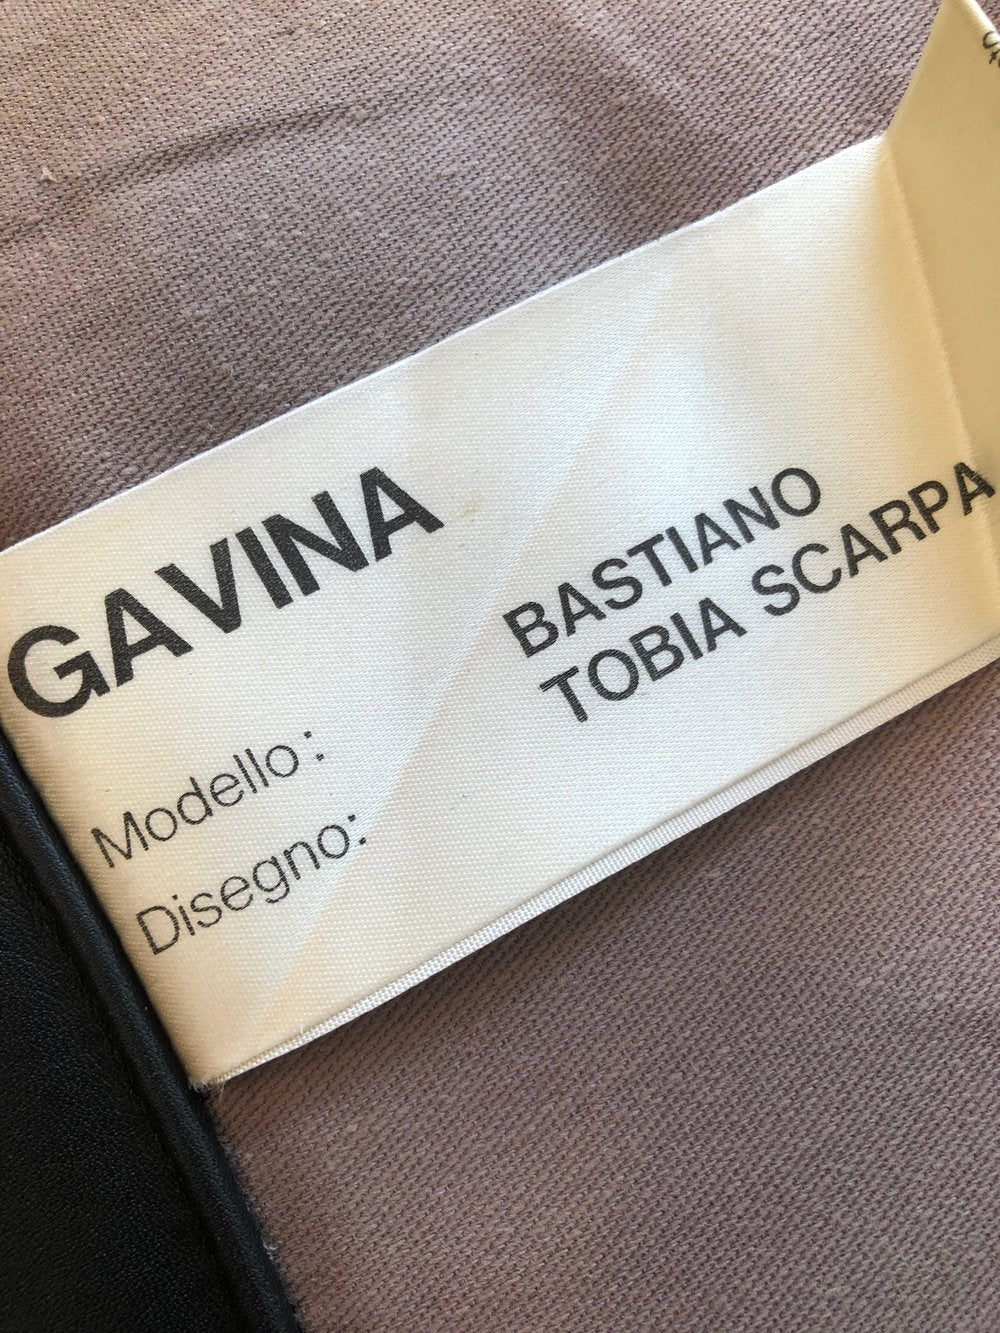 1960s Gavina "Bastiano" Italian Leather Sofa by Tobia Scarpa